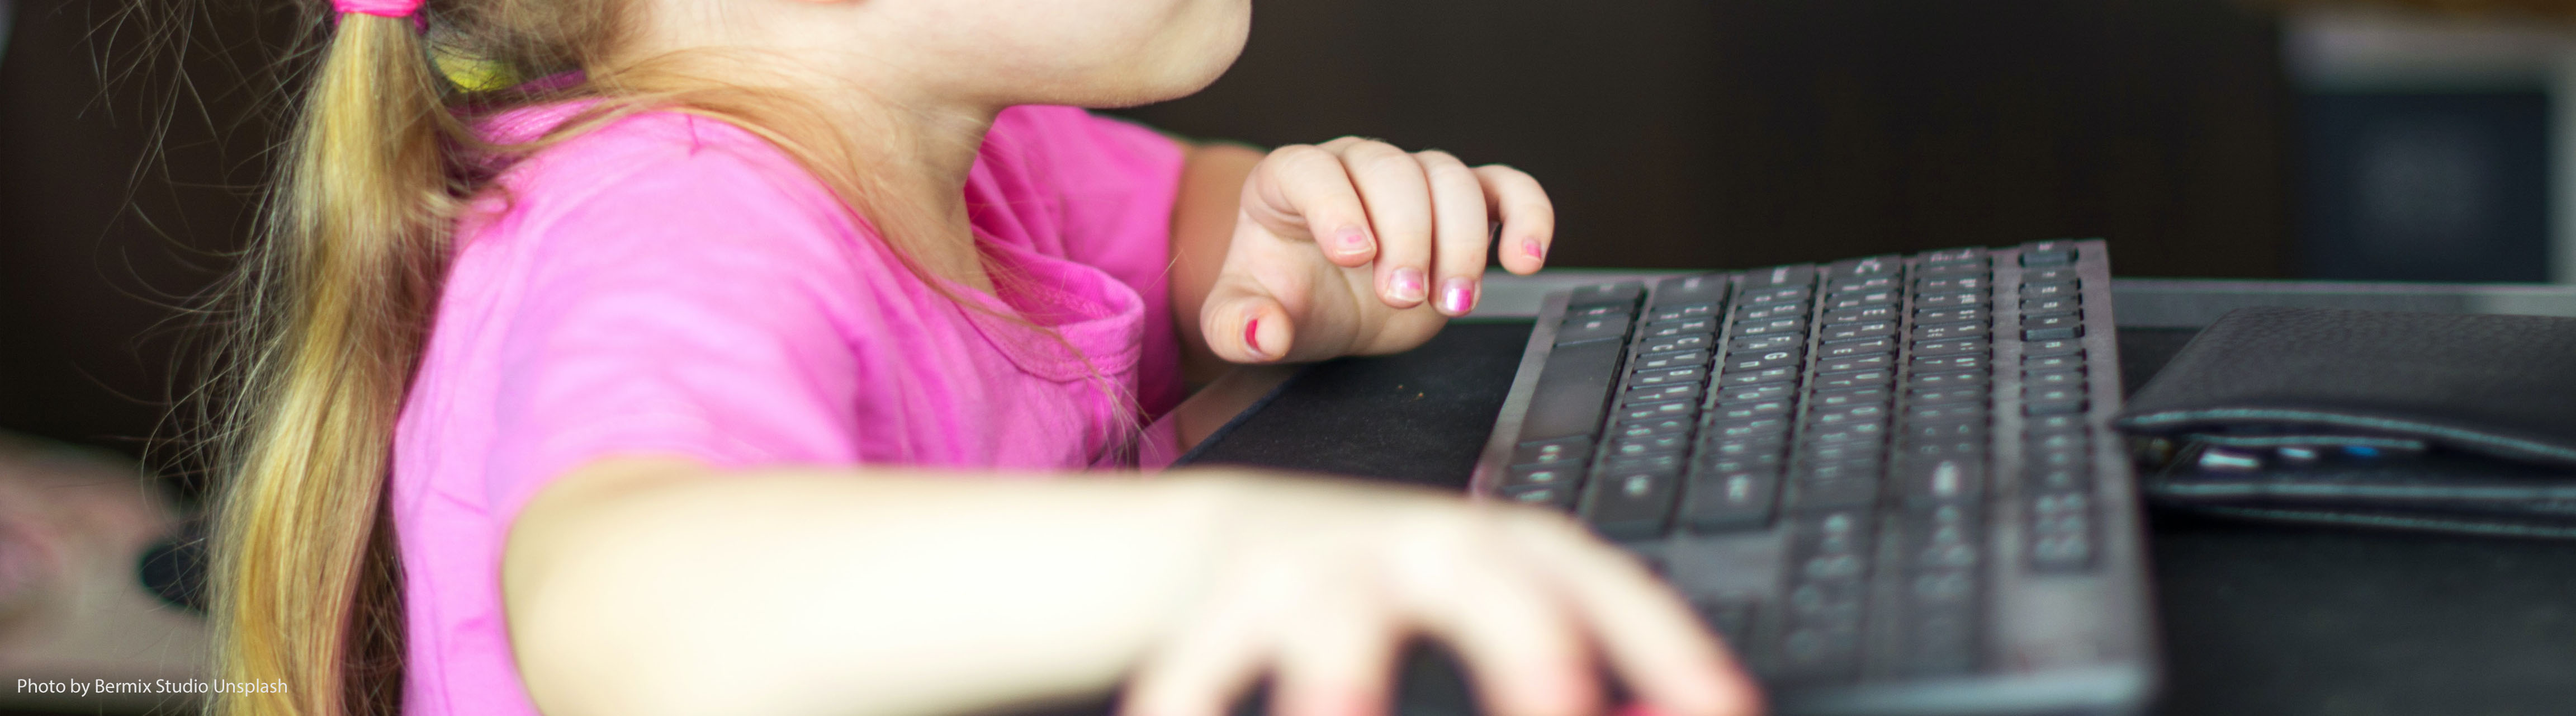 Mädchen in rosa T-Shirt sitzt vor einem Computer und bedient die Maus, "Gewalt und Geschlechterrollen in Computerspielen", ZIMD